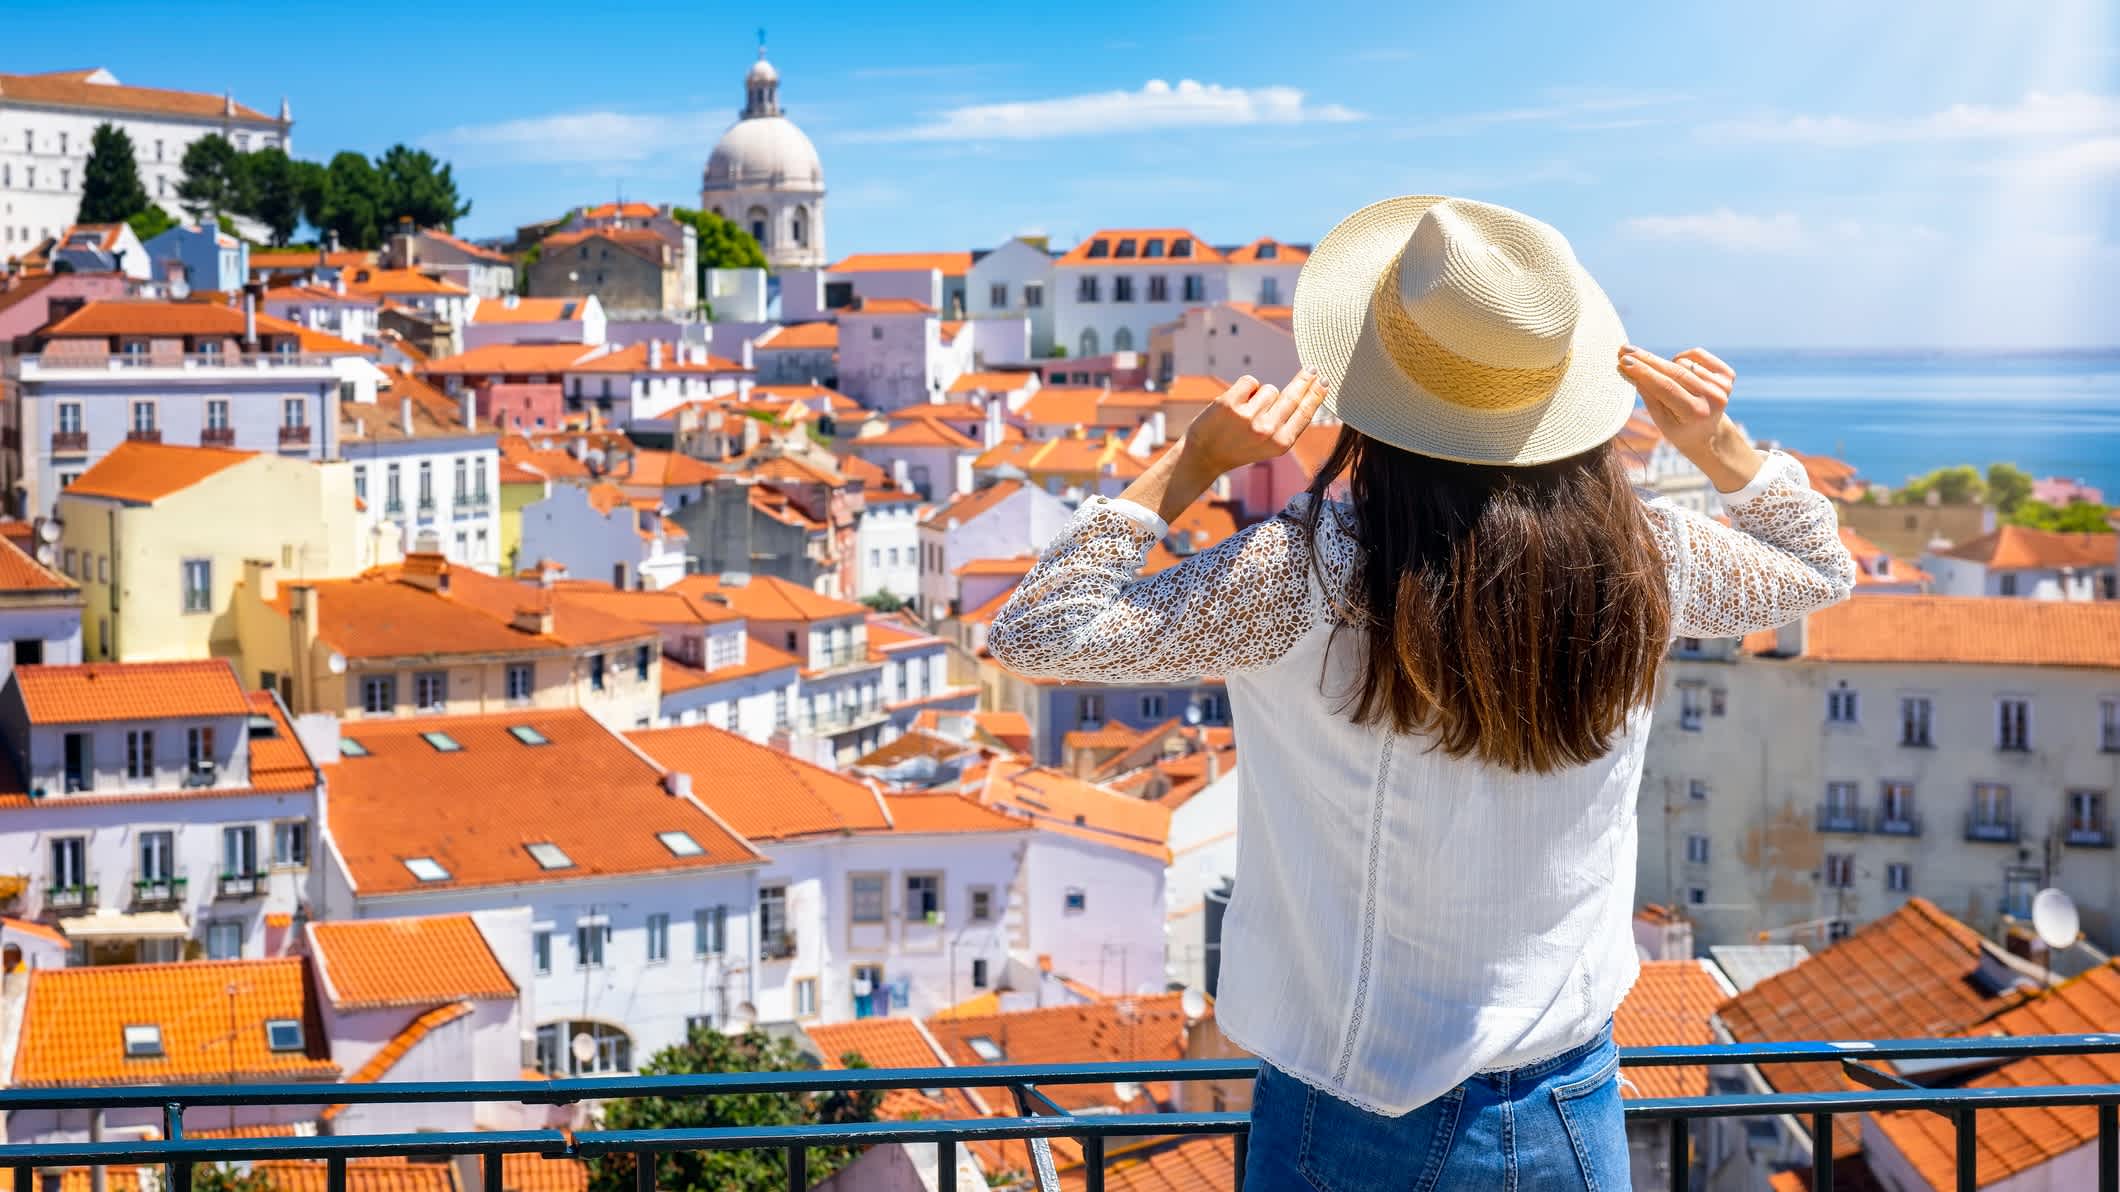 Une touriste contemple le magnifique paysage urbain de Lisbonne, Portugal